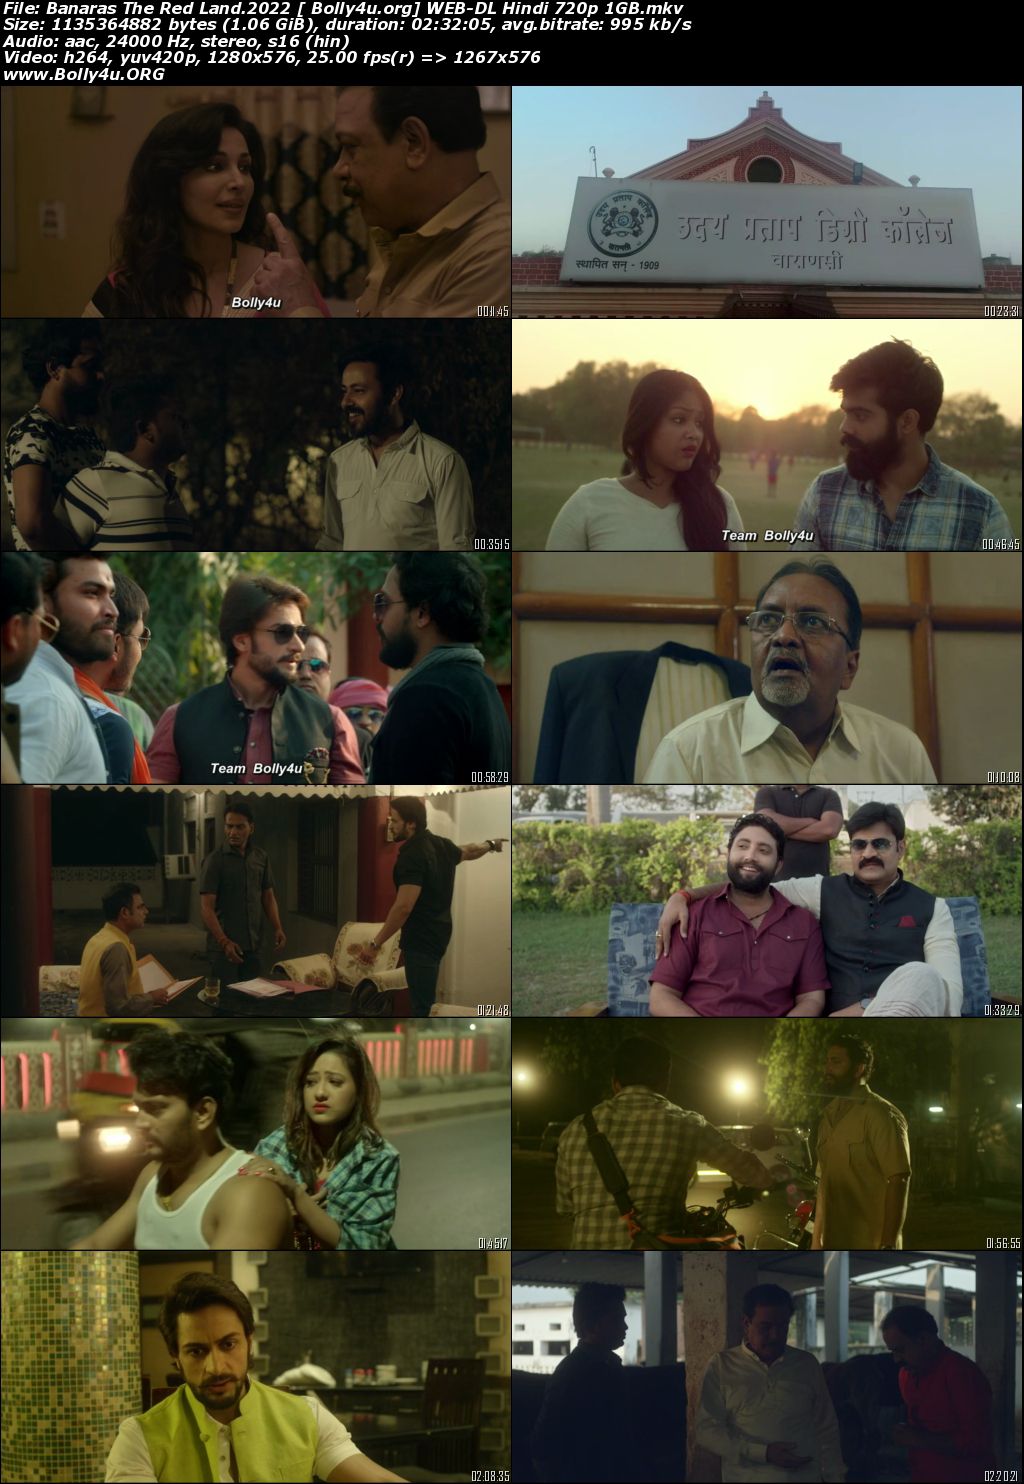 Banaras The Red Land 2022 WEB-DL Hindi Movie Download 720p 480p